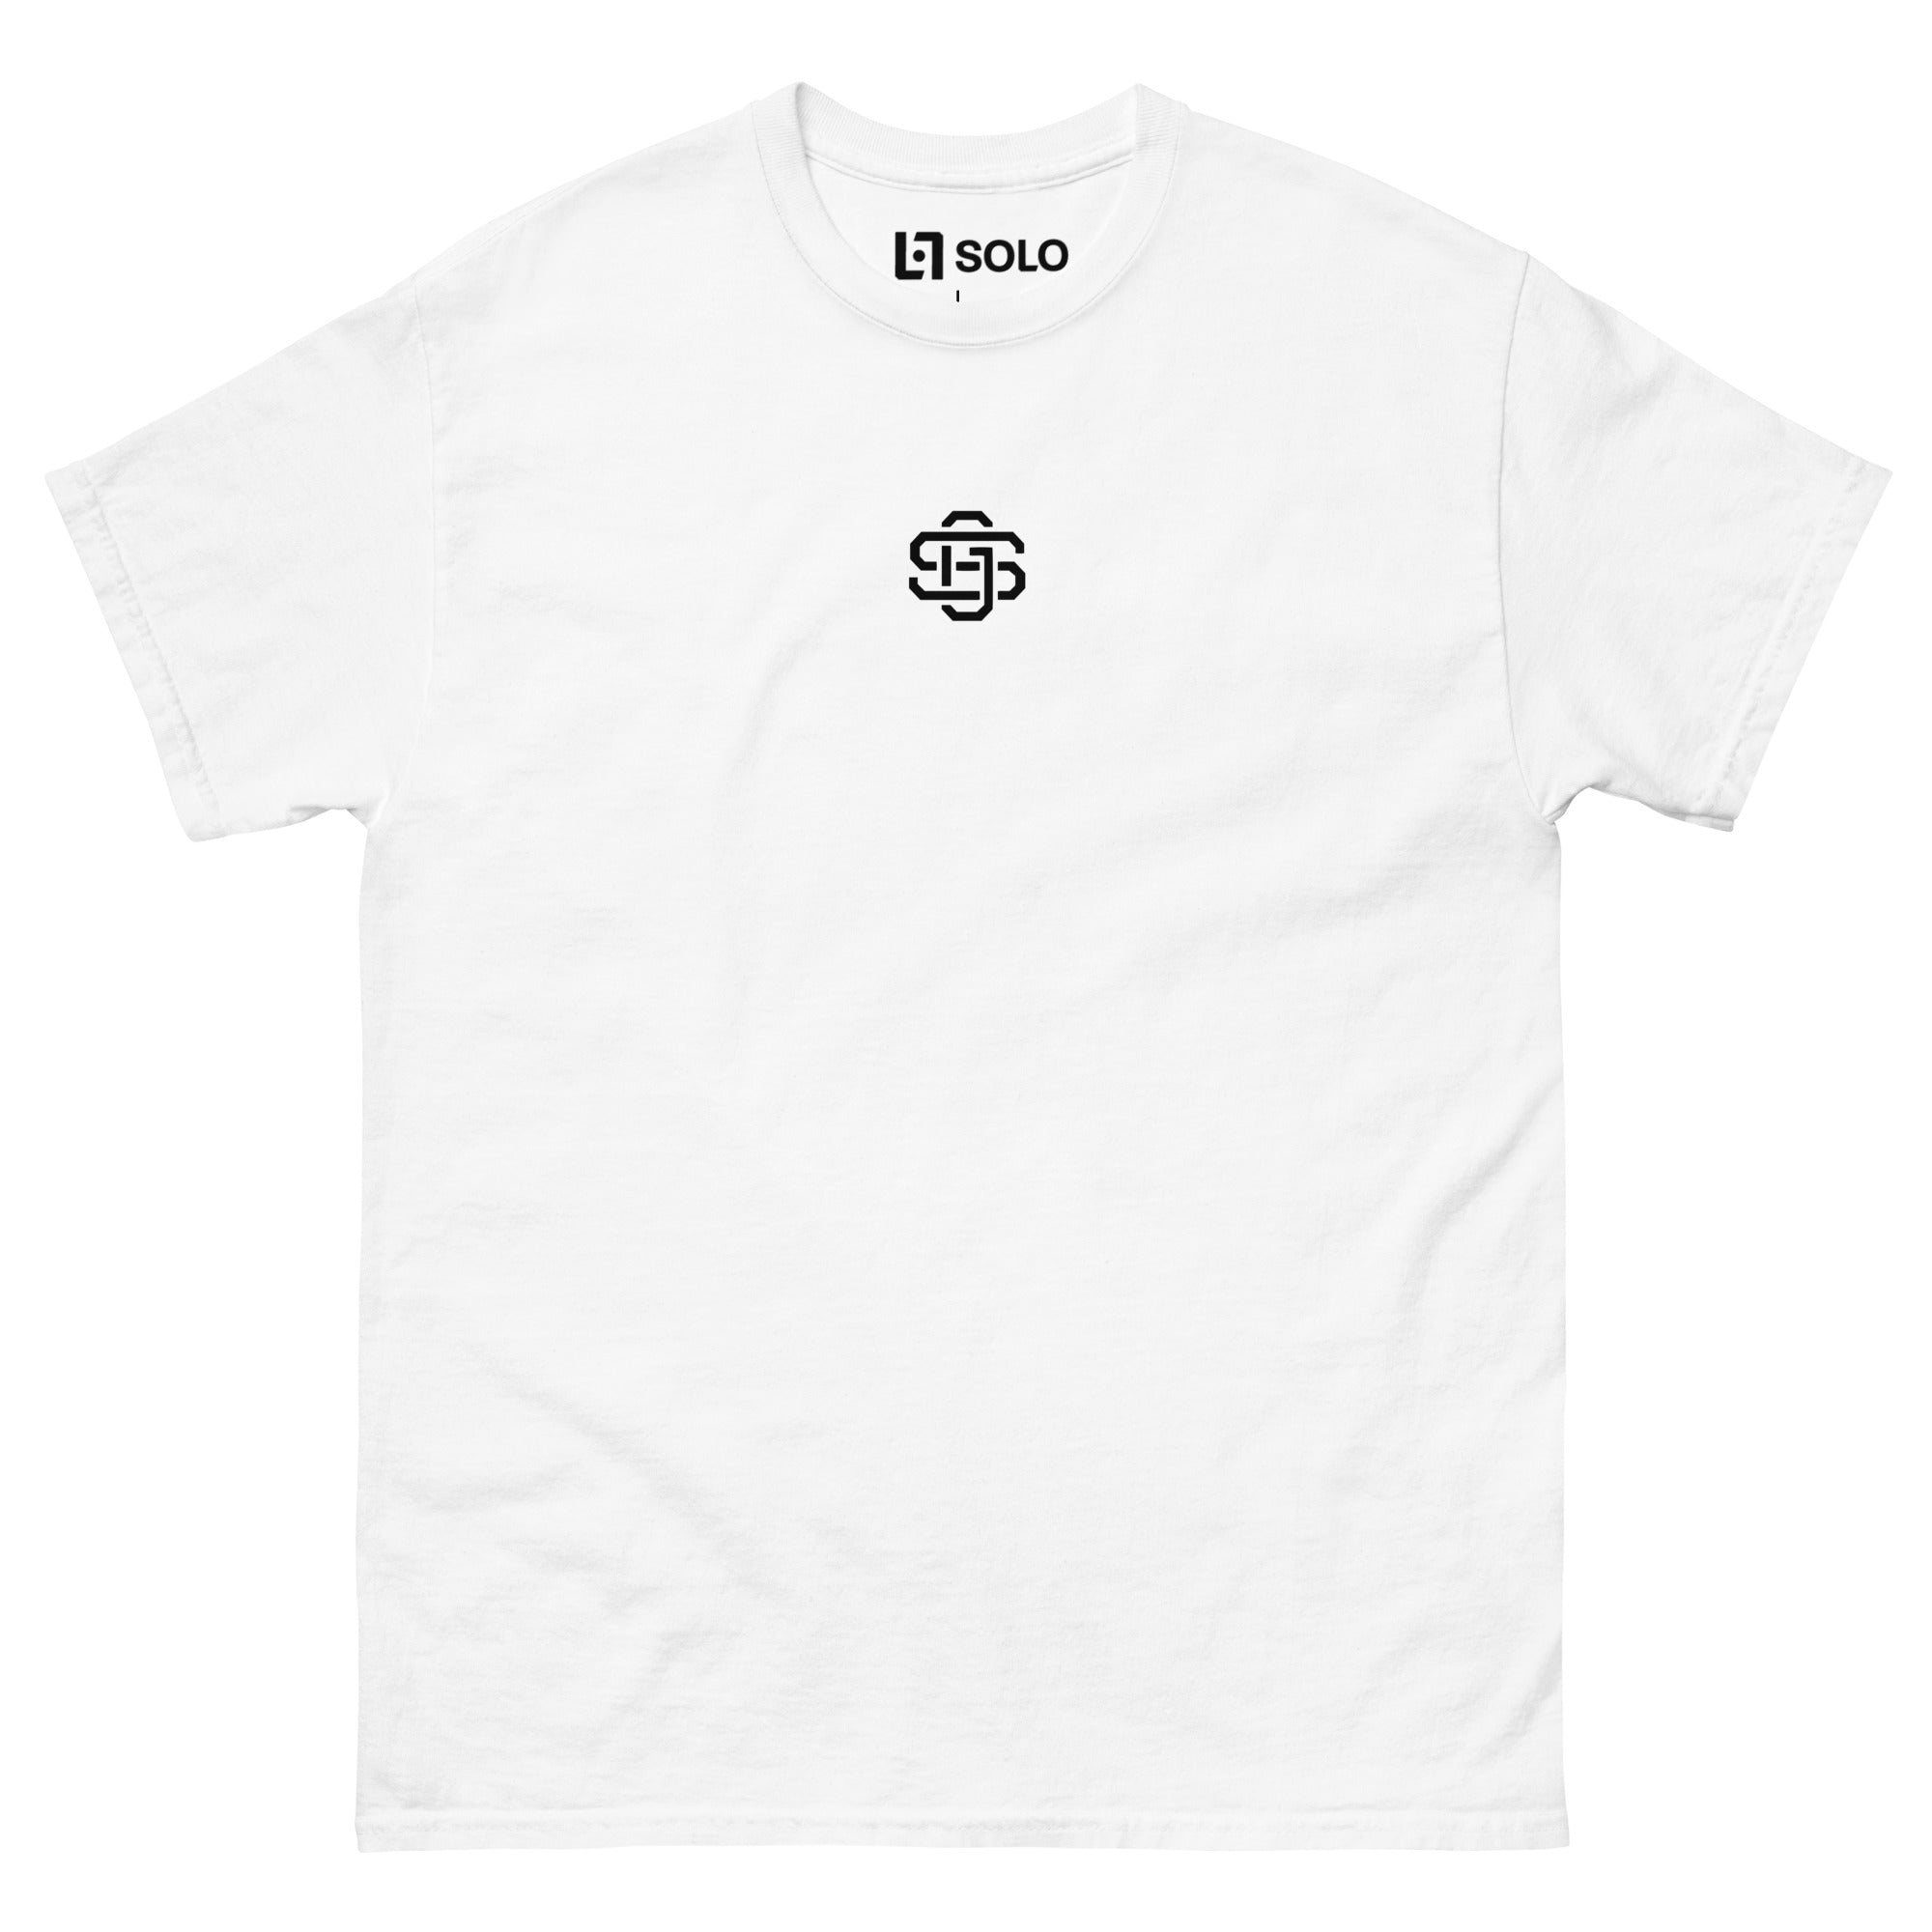 white monogram shirt